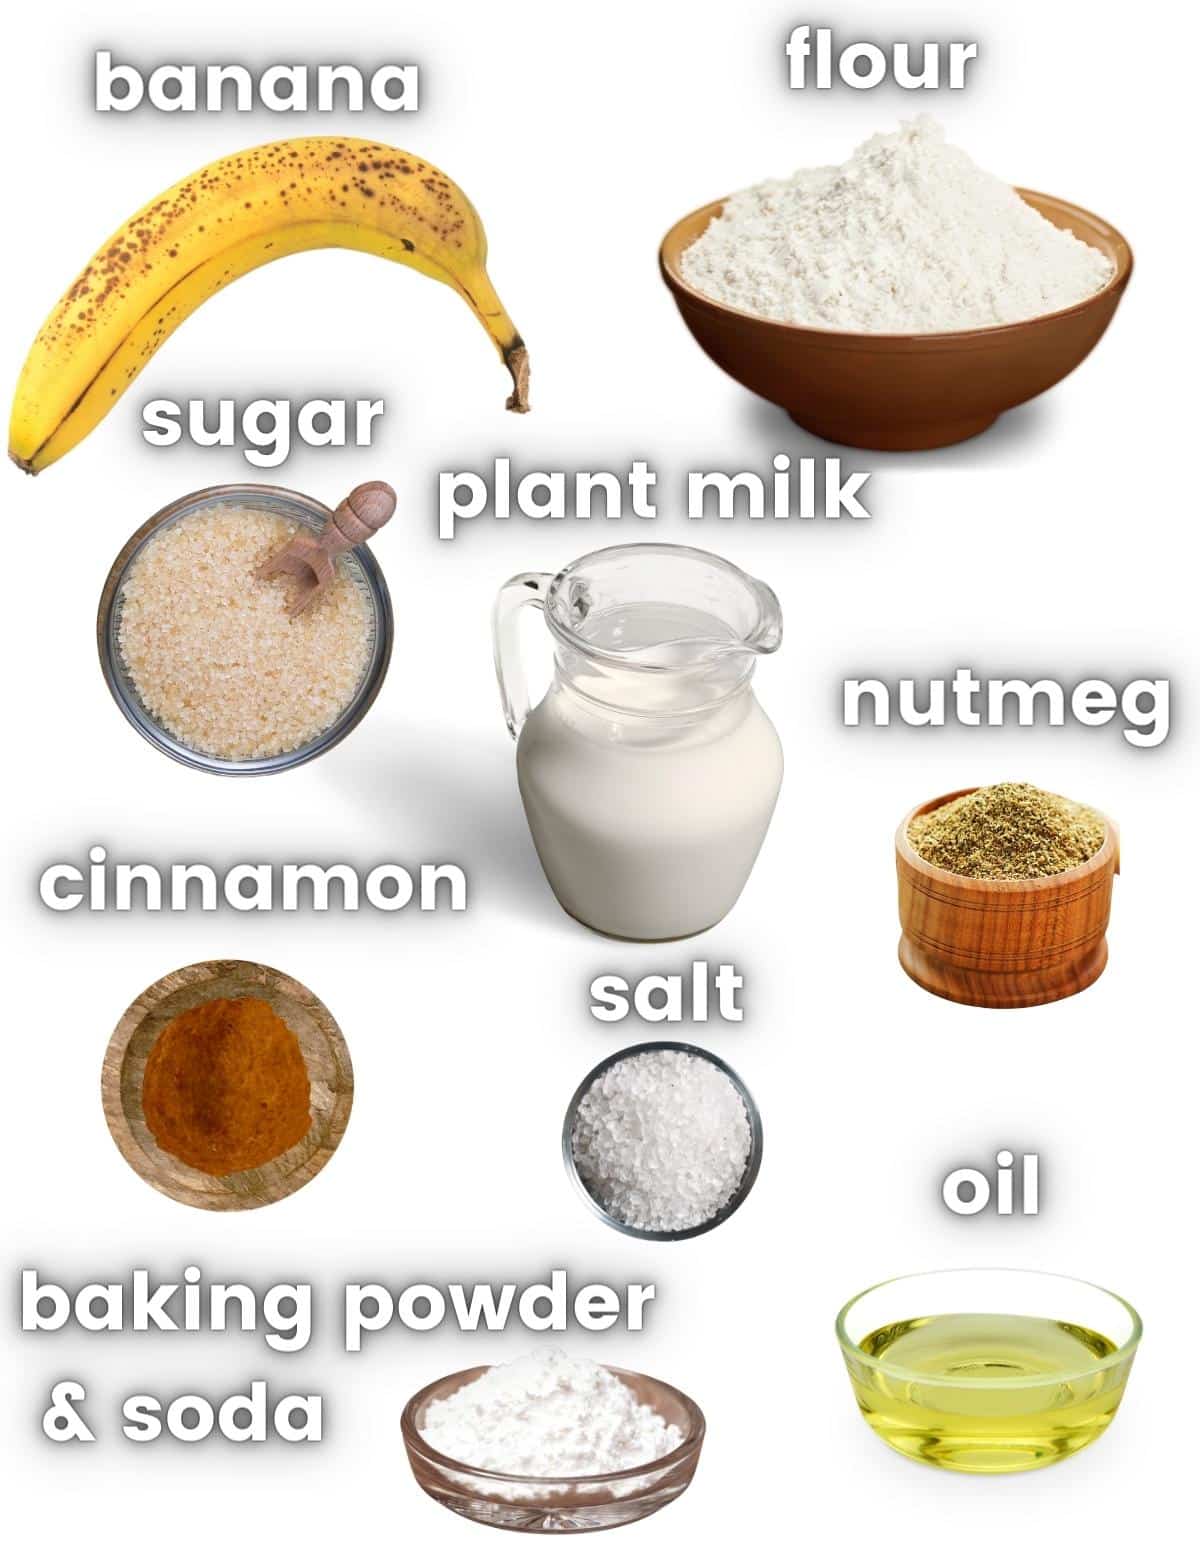 the ingredients needed to make vegan banana pancakes